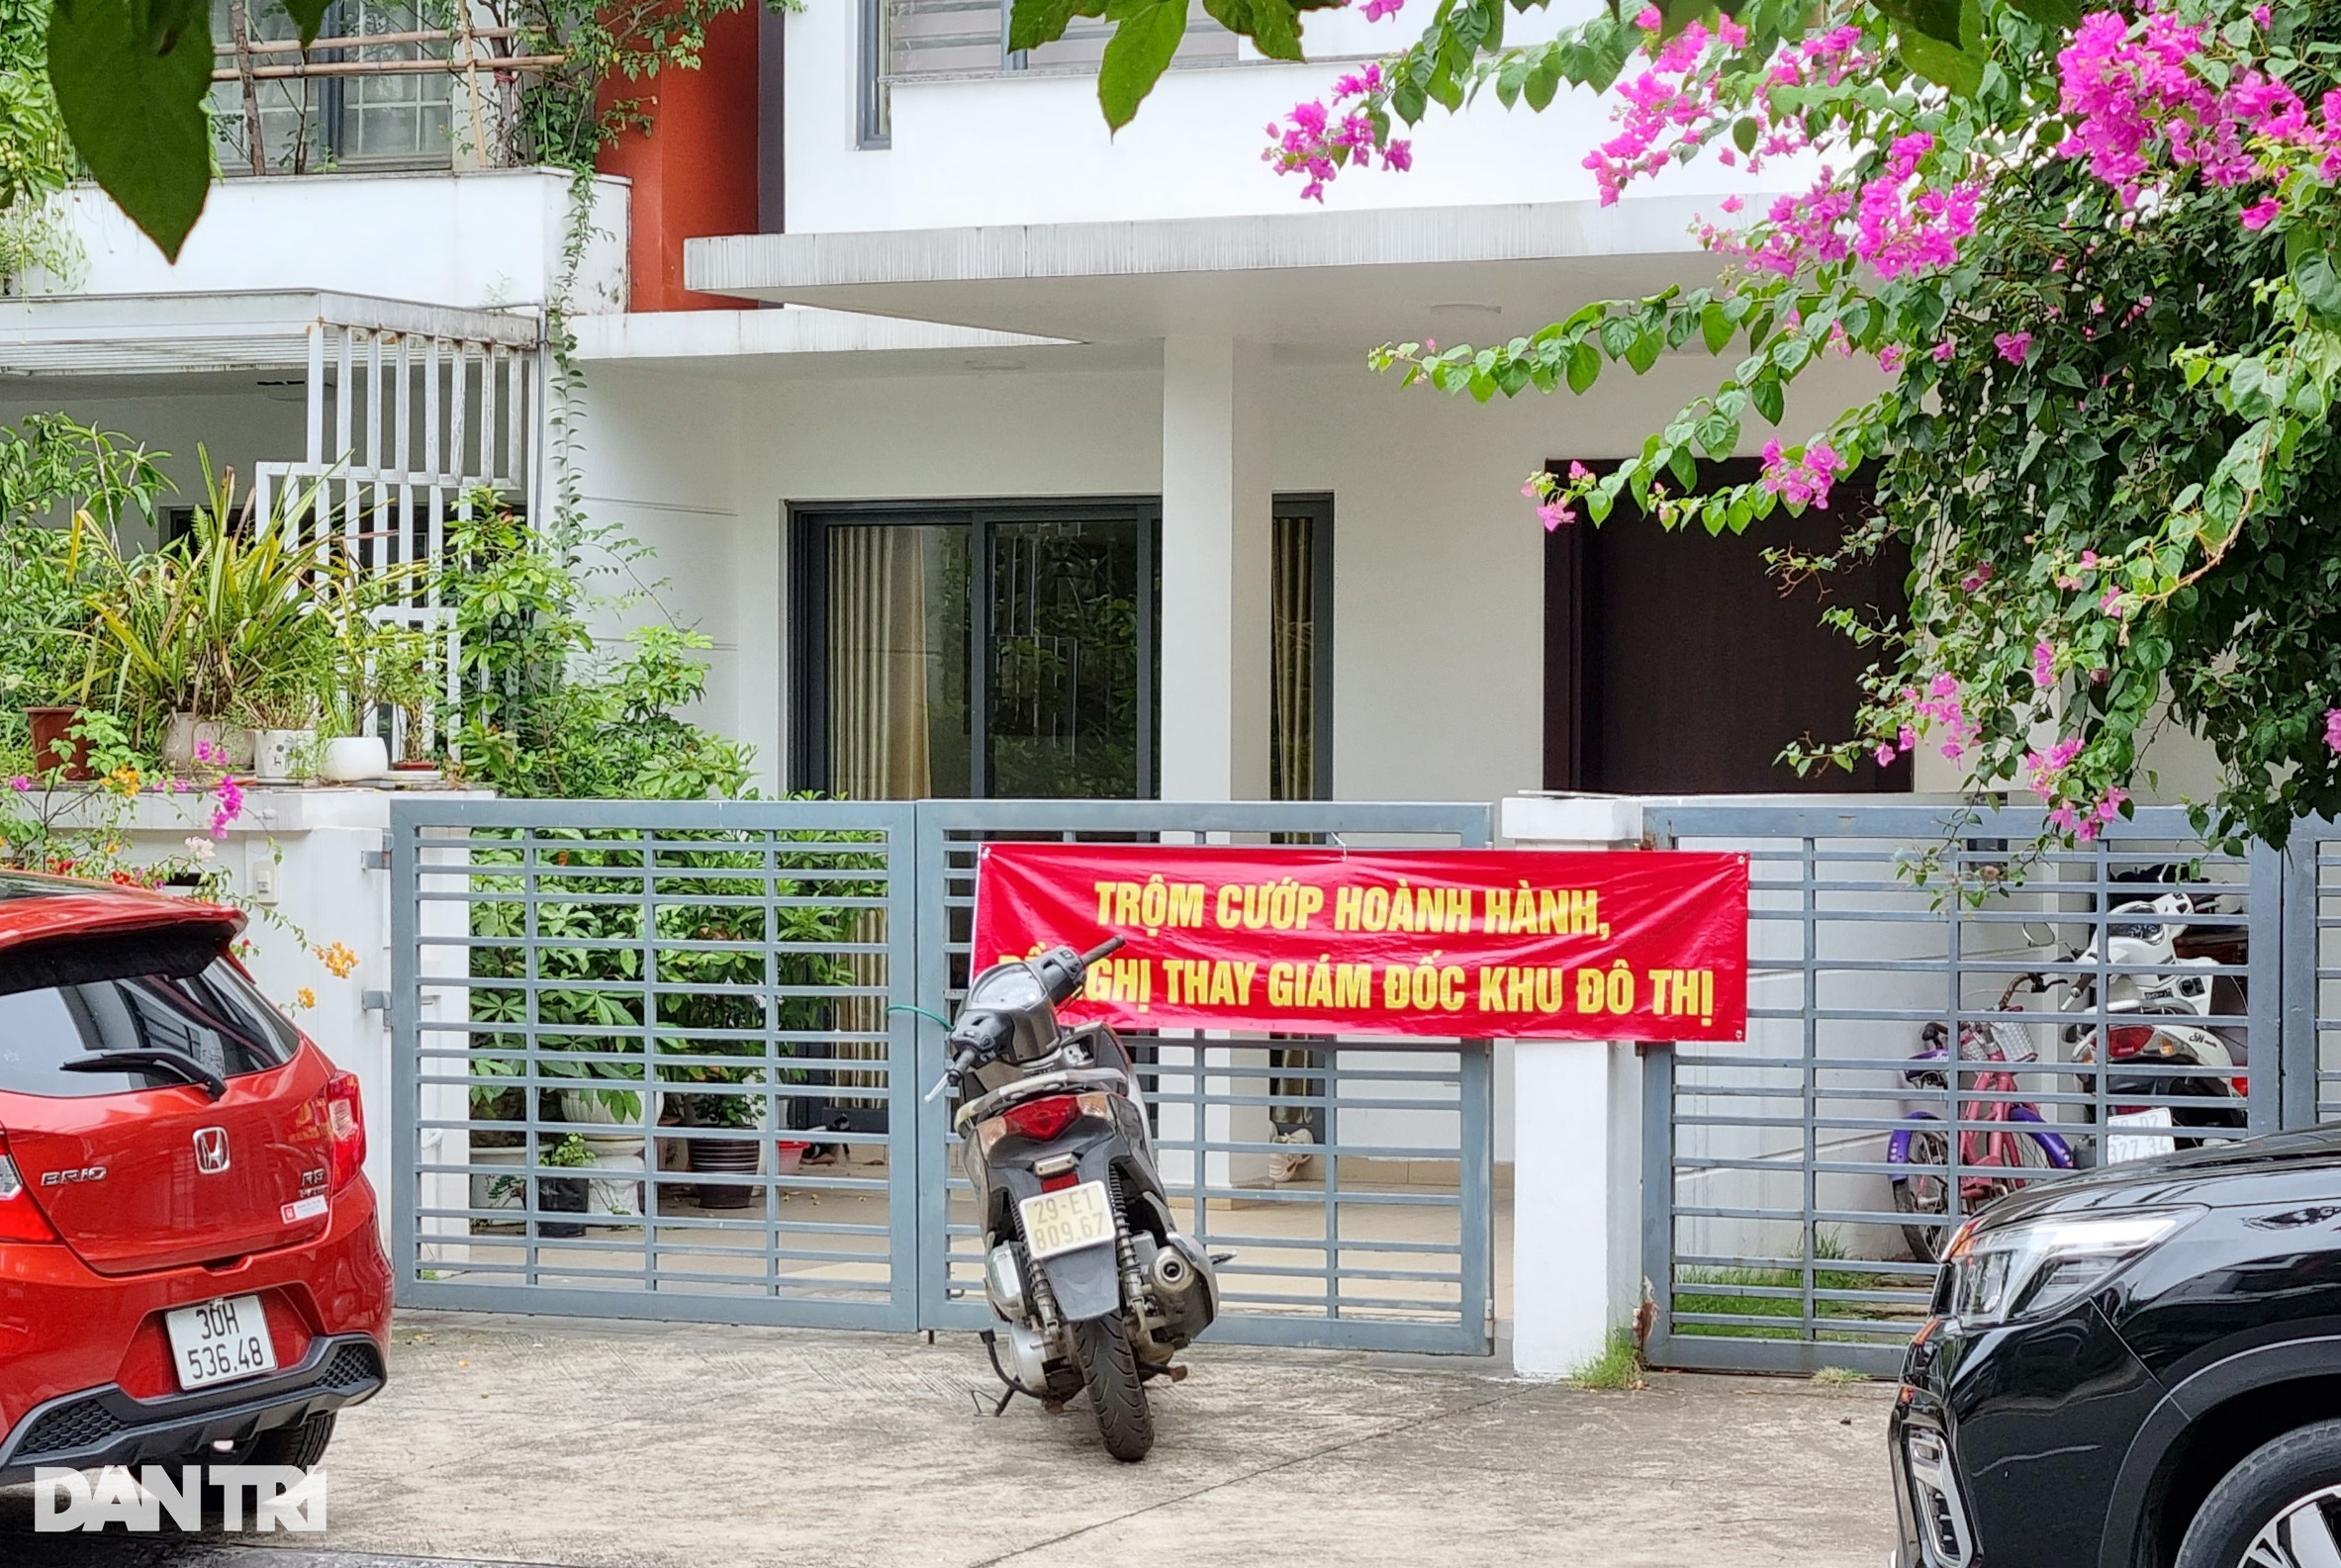 Cư dân phản ánh khu biệt thự triệu đô ở Hà Nội liên tục bị trộm ghé thăm - 1